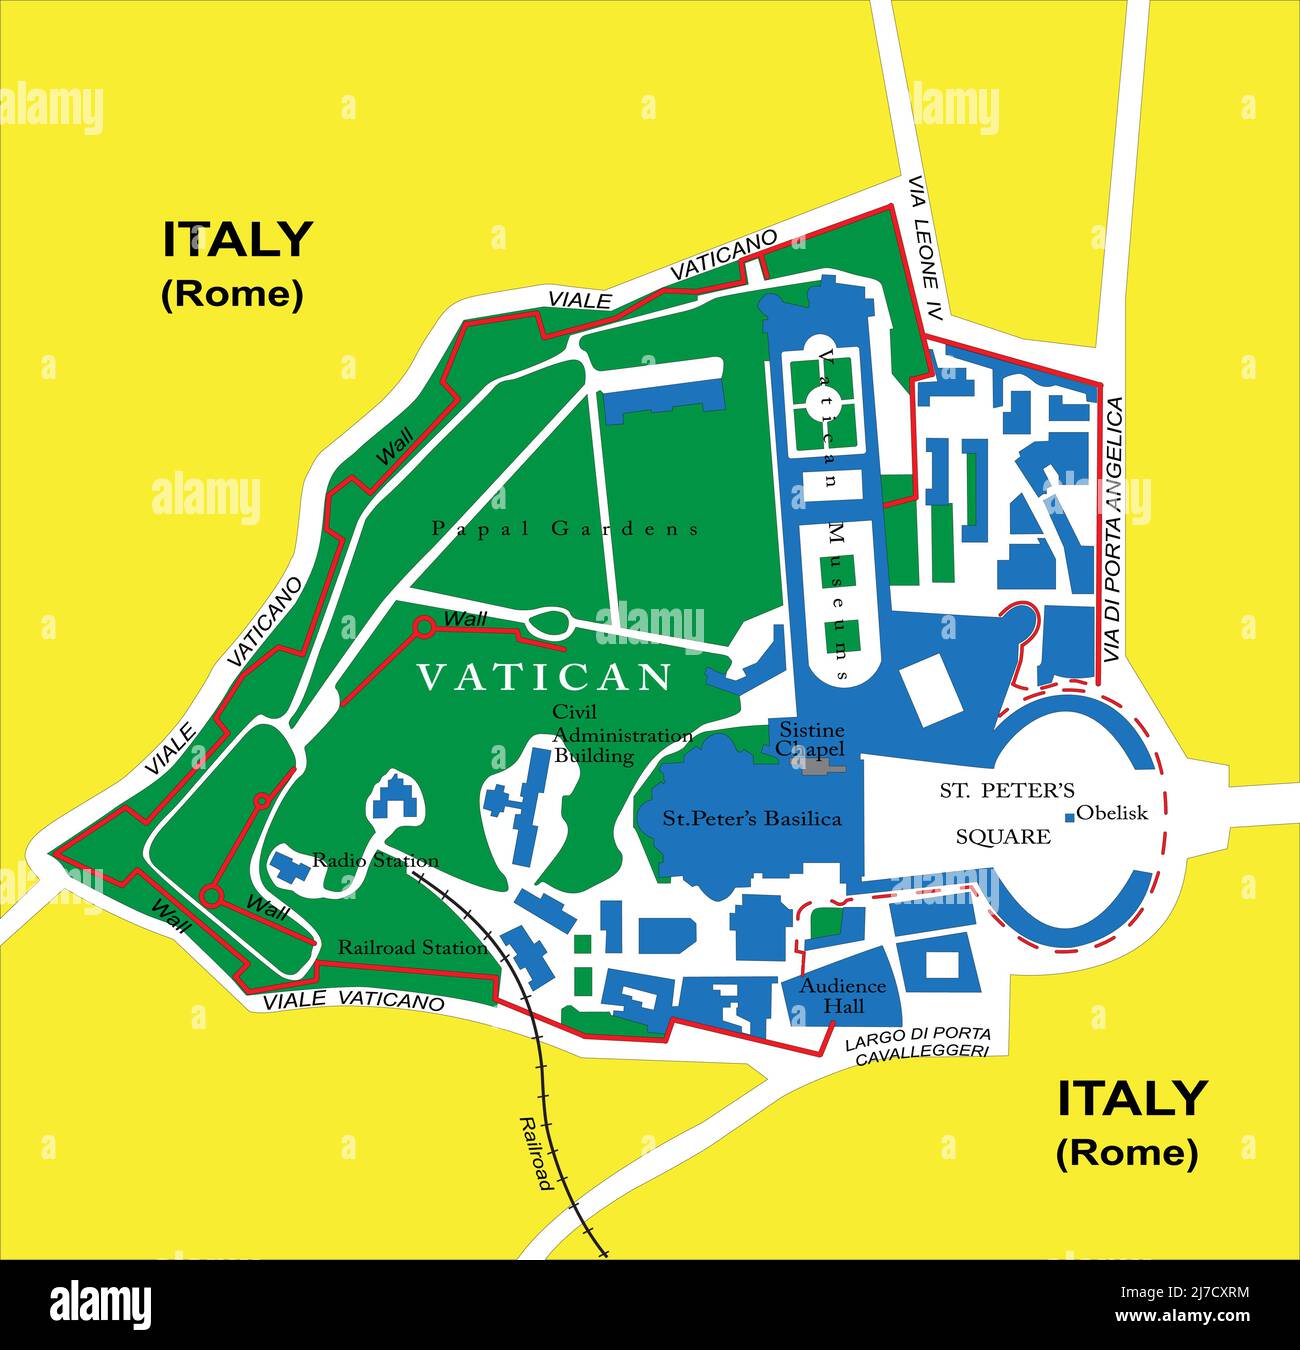 Hochdetaillierte Vektorkarte des Vatikans mit Verwaltungsgebieten, Hauptstädten und Straßen. Stock Vektor